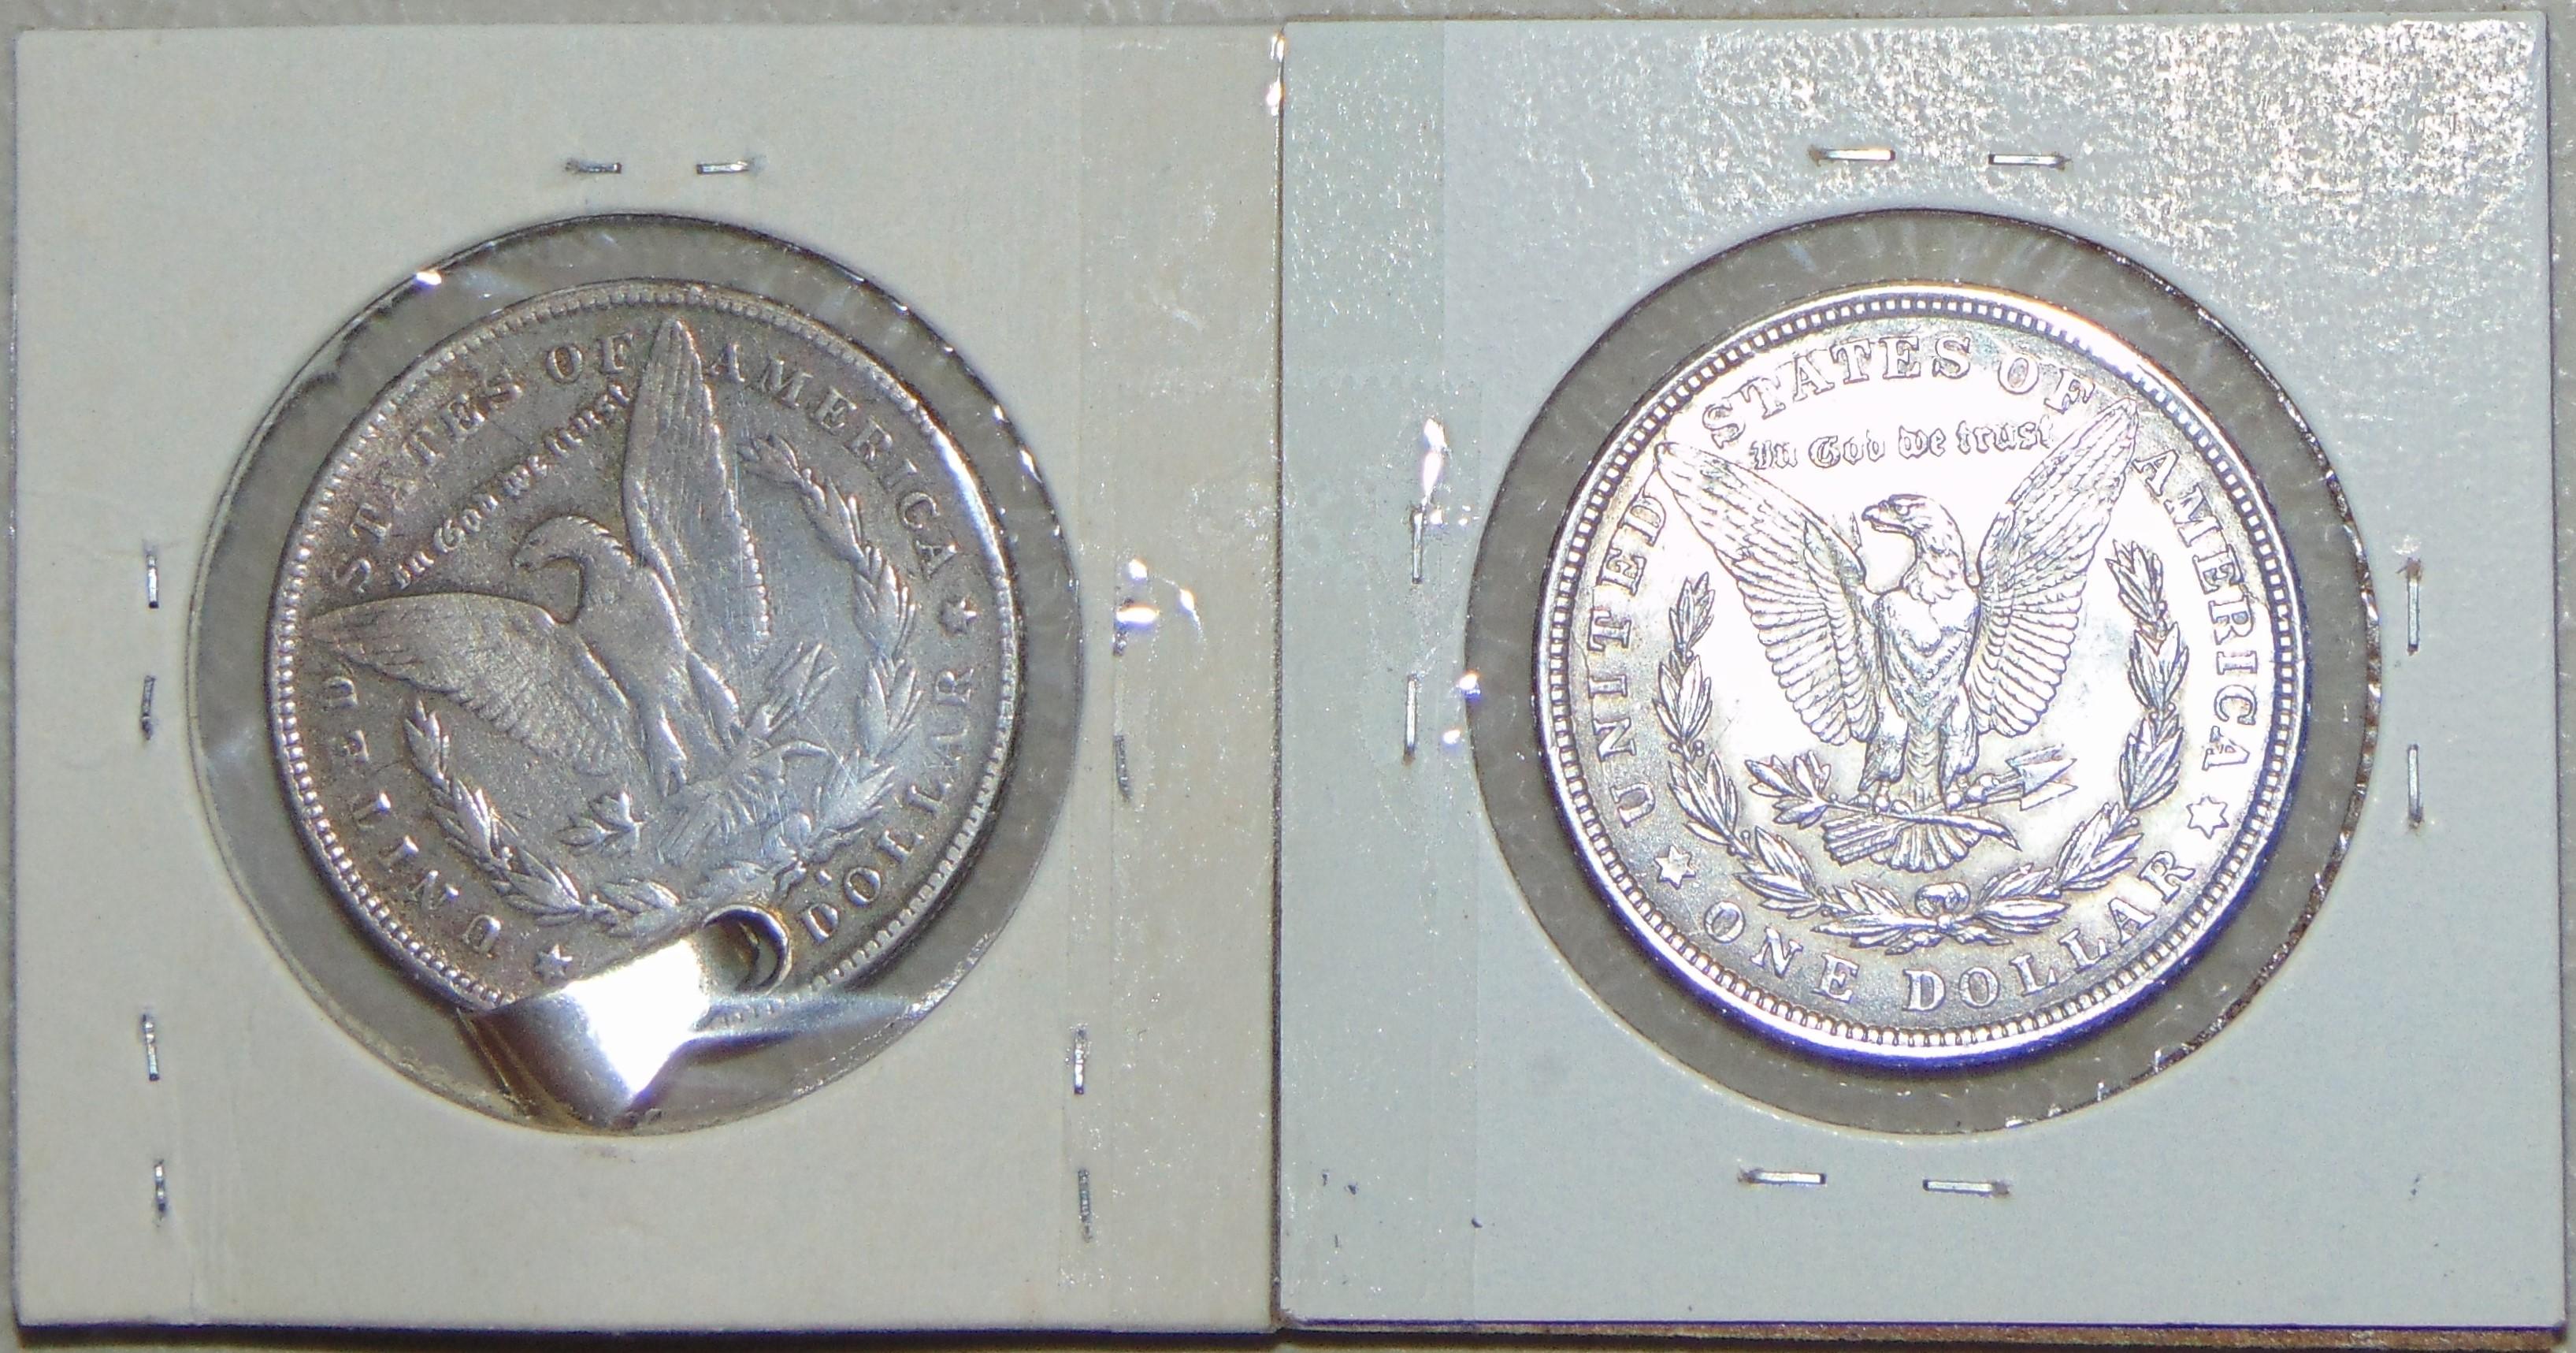 1878-S (hole) Morgan Dollar. 1921 Morgan Dollar.